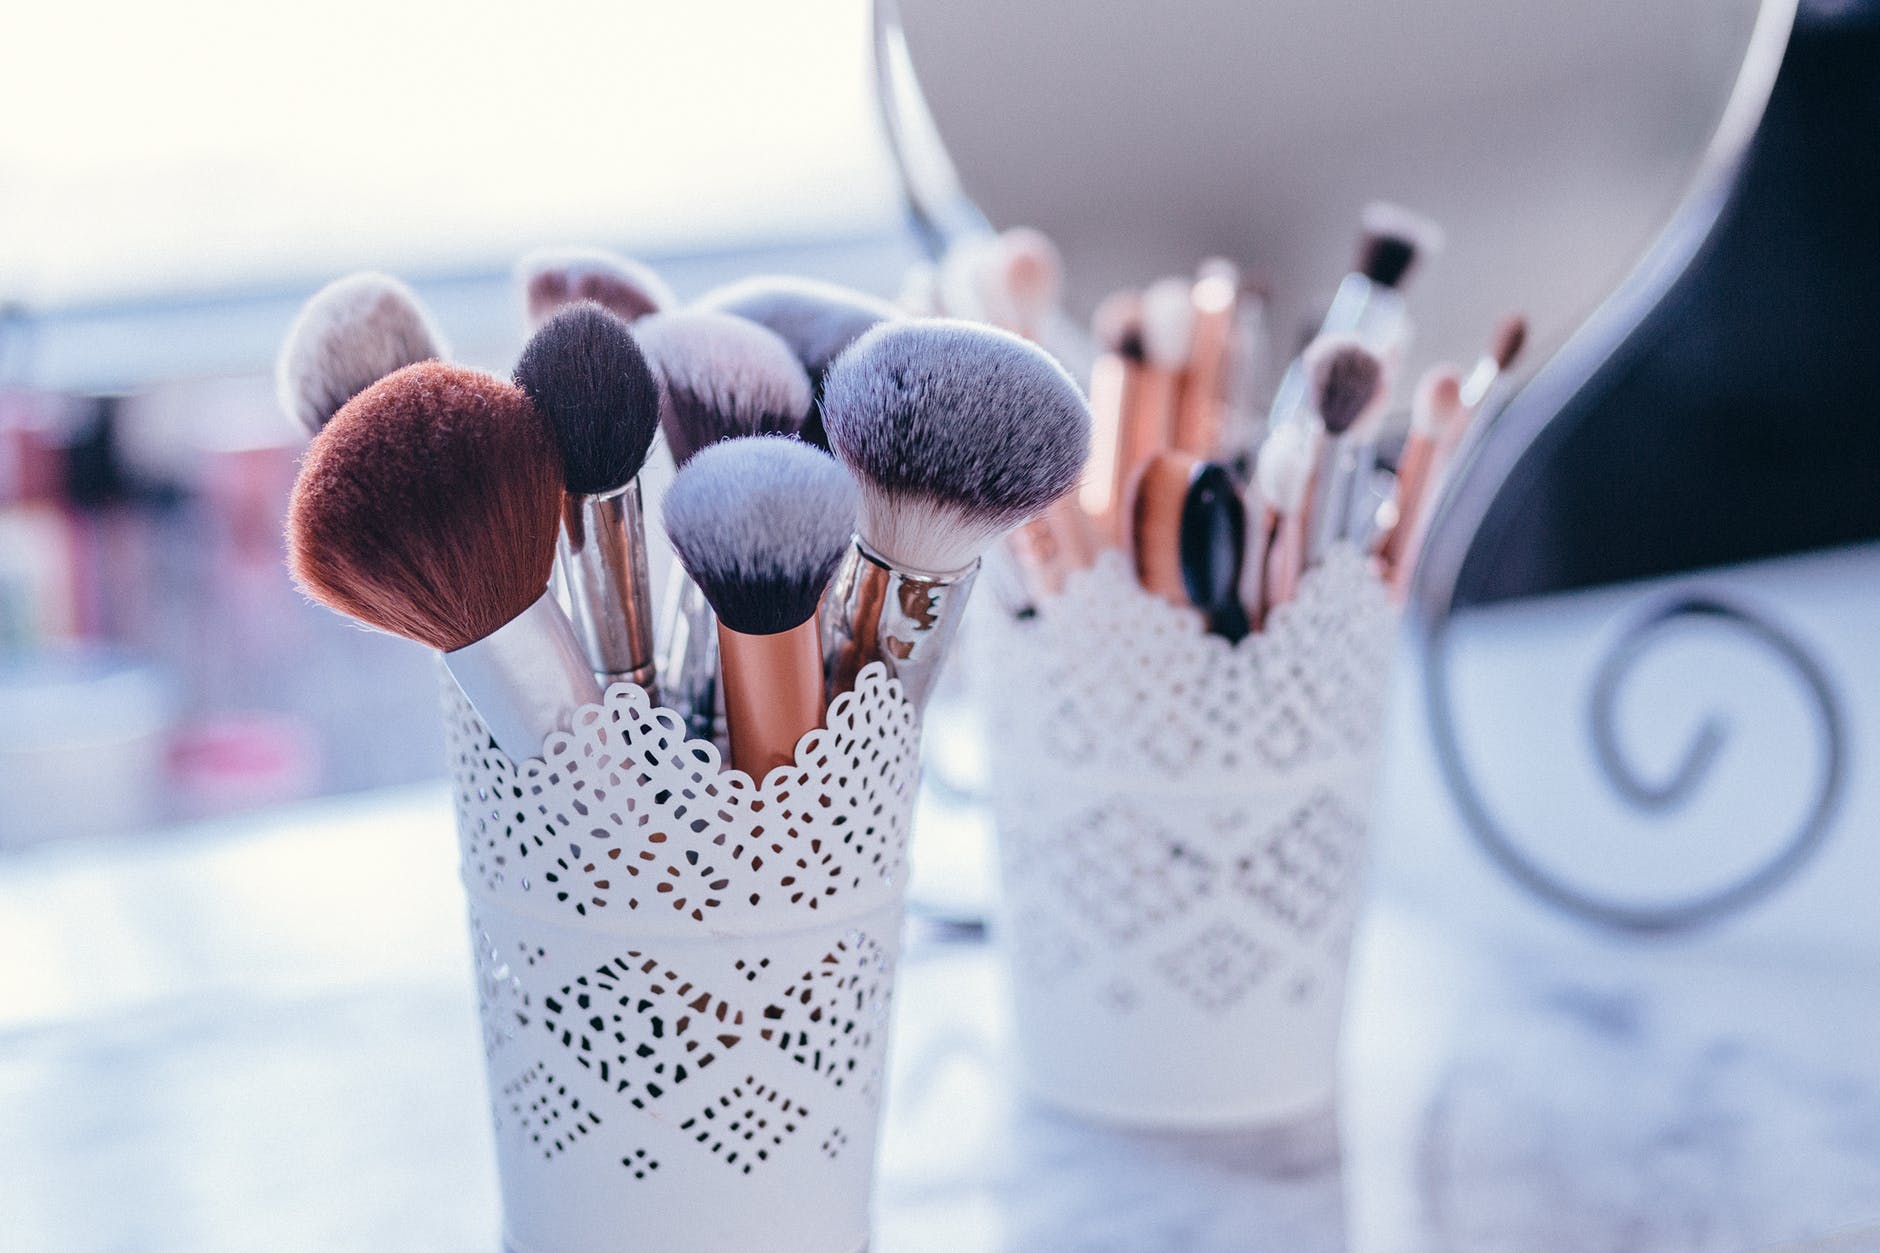 Organize Makeup Brushes